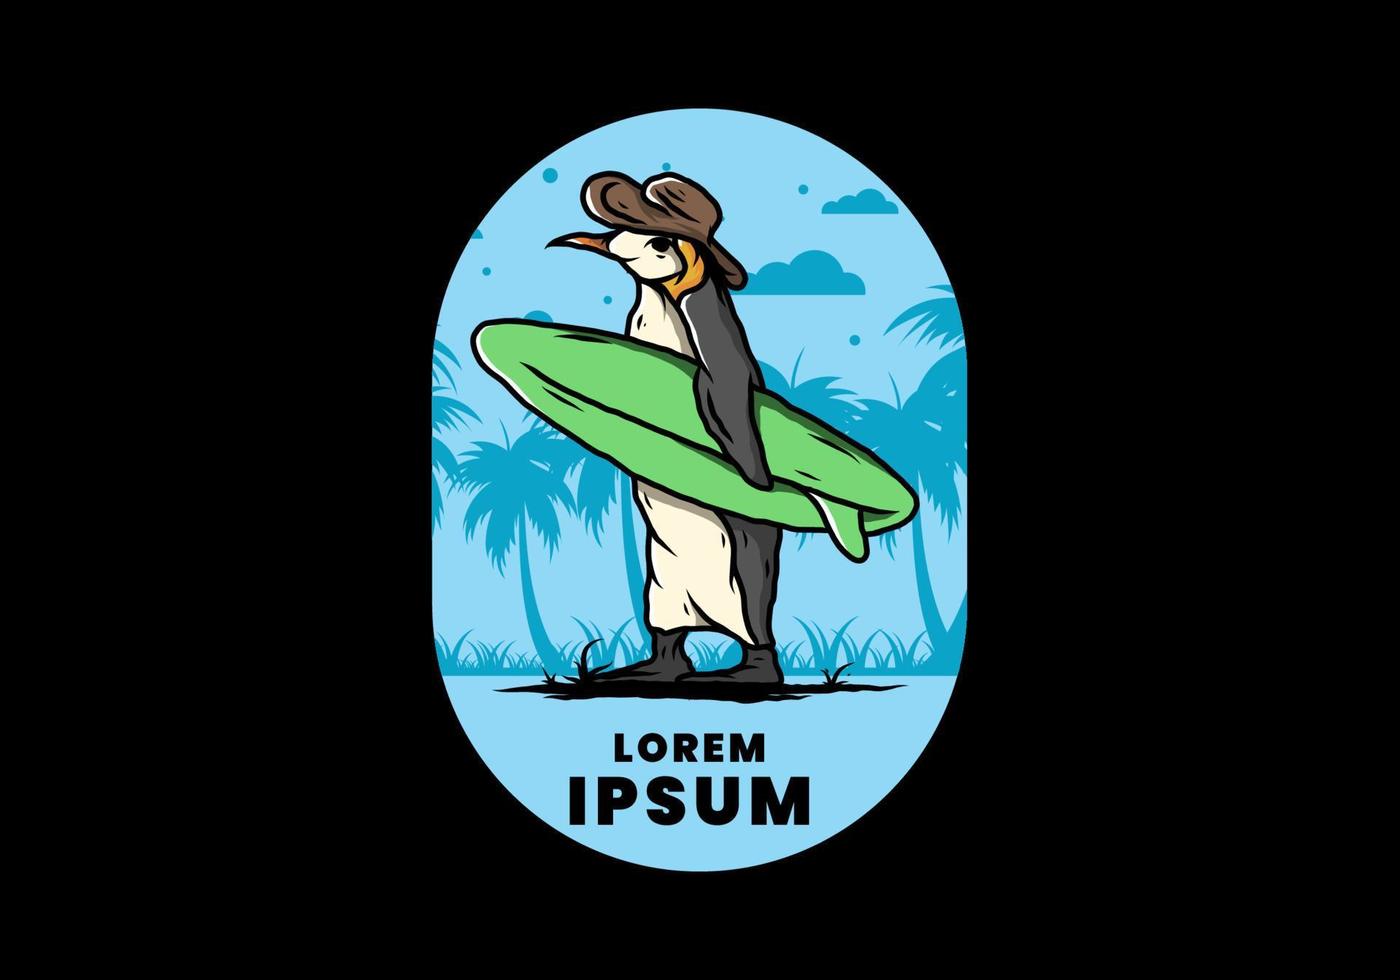 pingüino lindo que lleva una tabla de surf en la ilustración de la playa vector